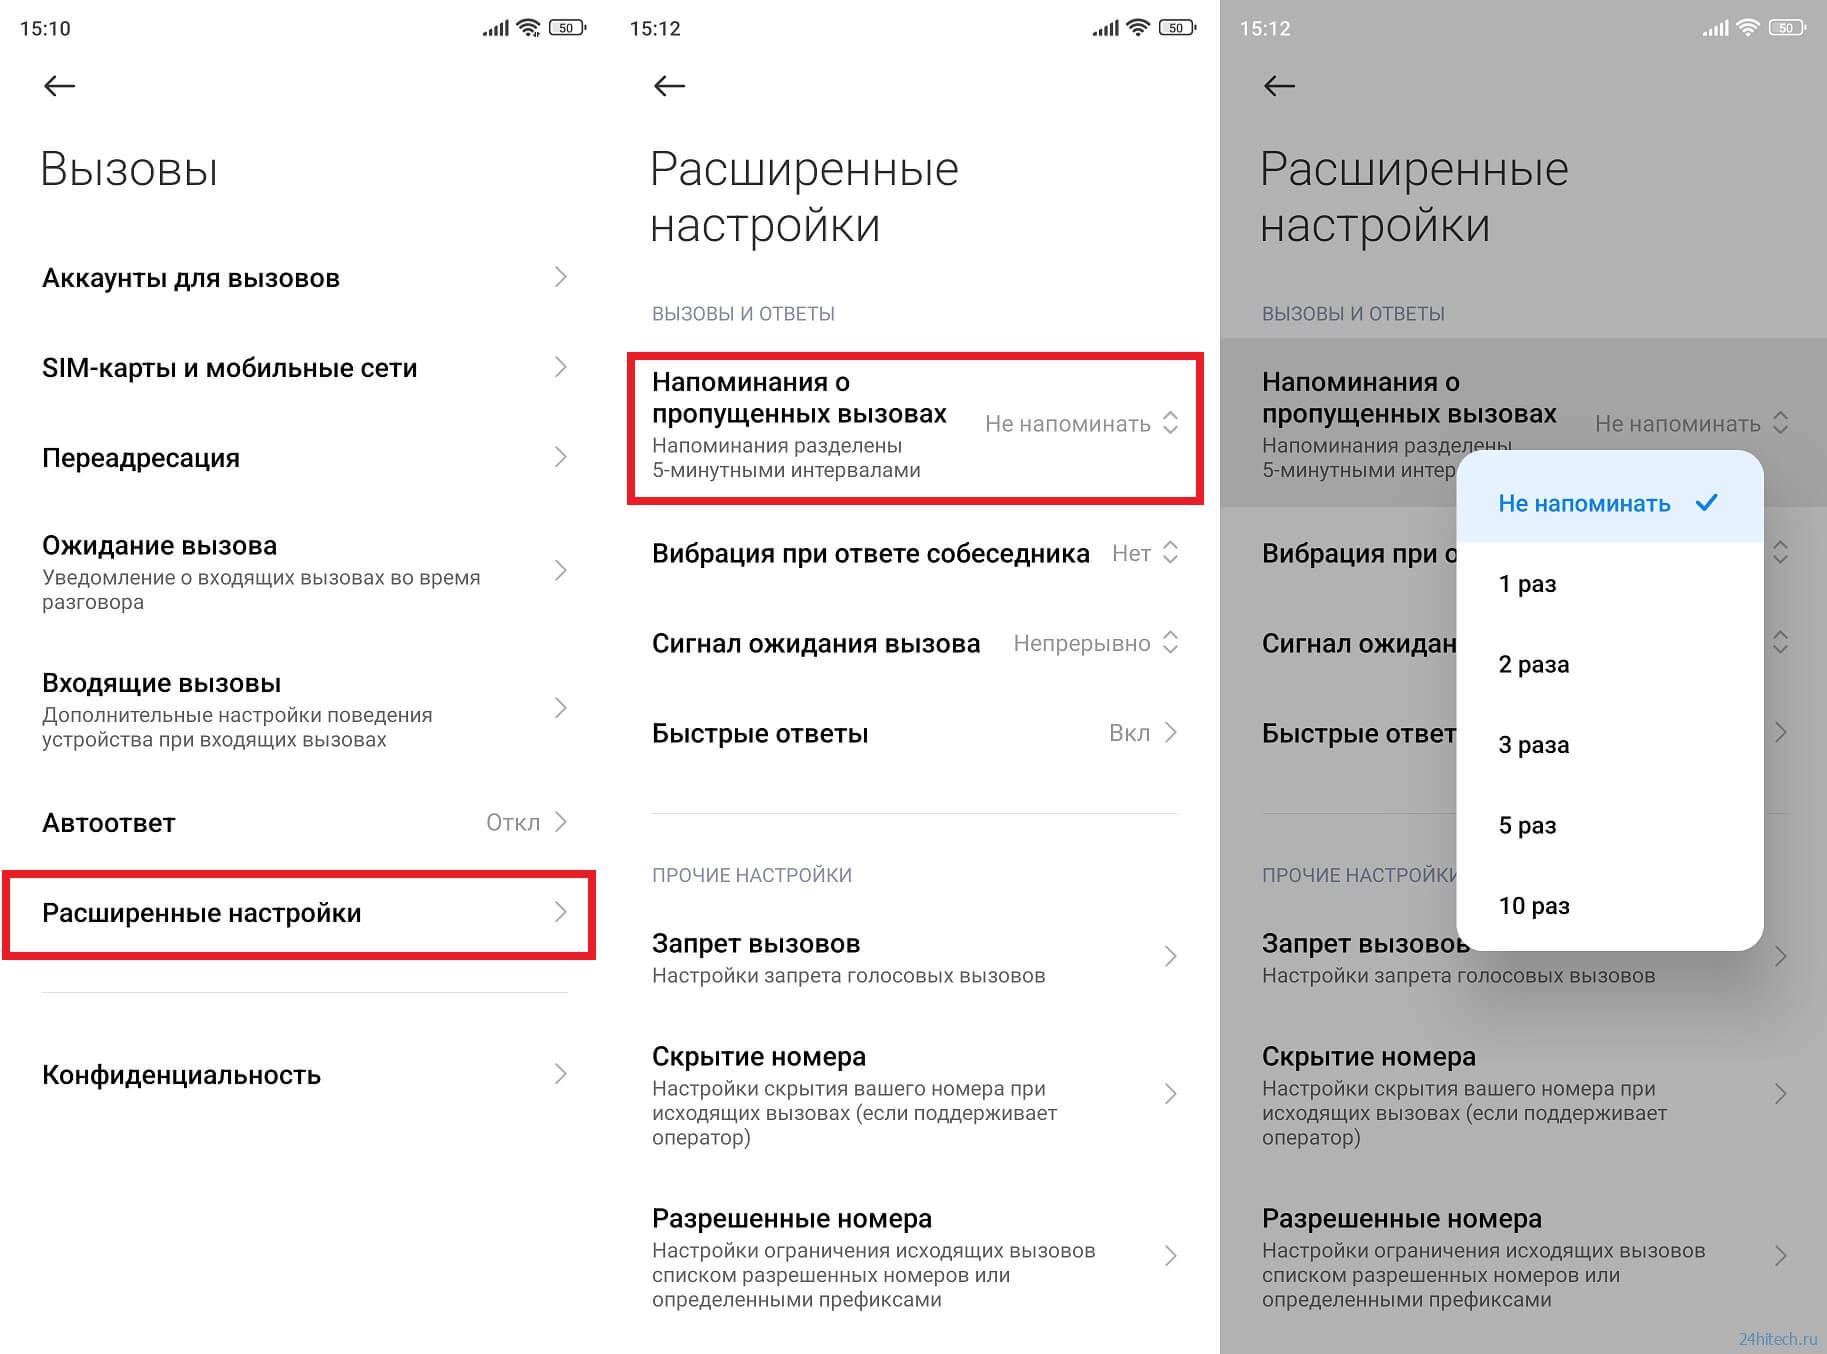 Как пользоваться телеграмм на телефоне пошаговая инструкция андроид на русском языке бесплатно фото 99